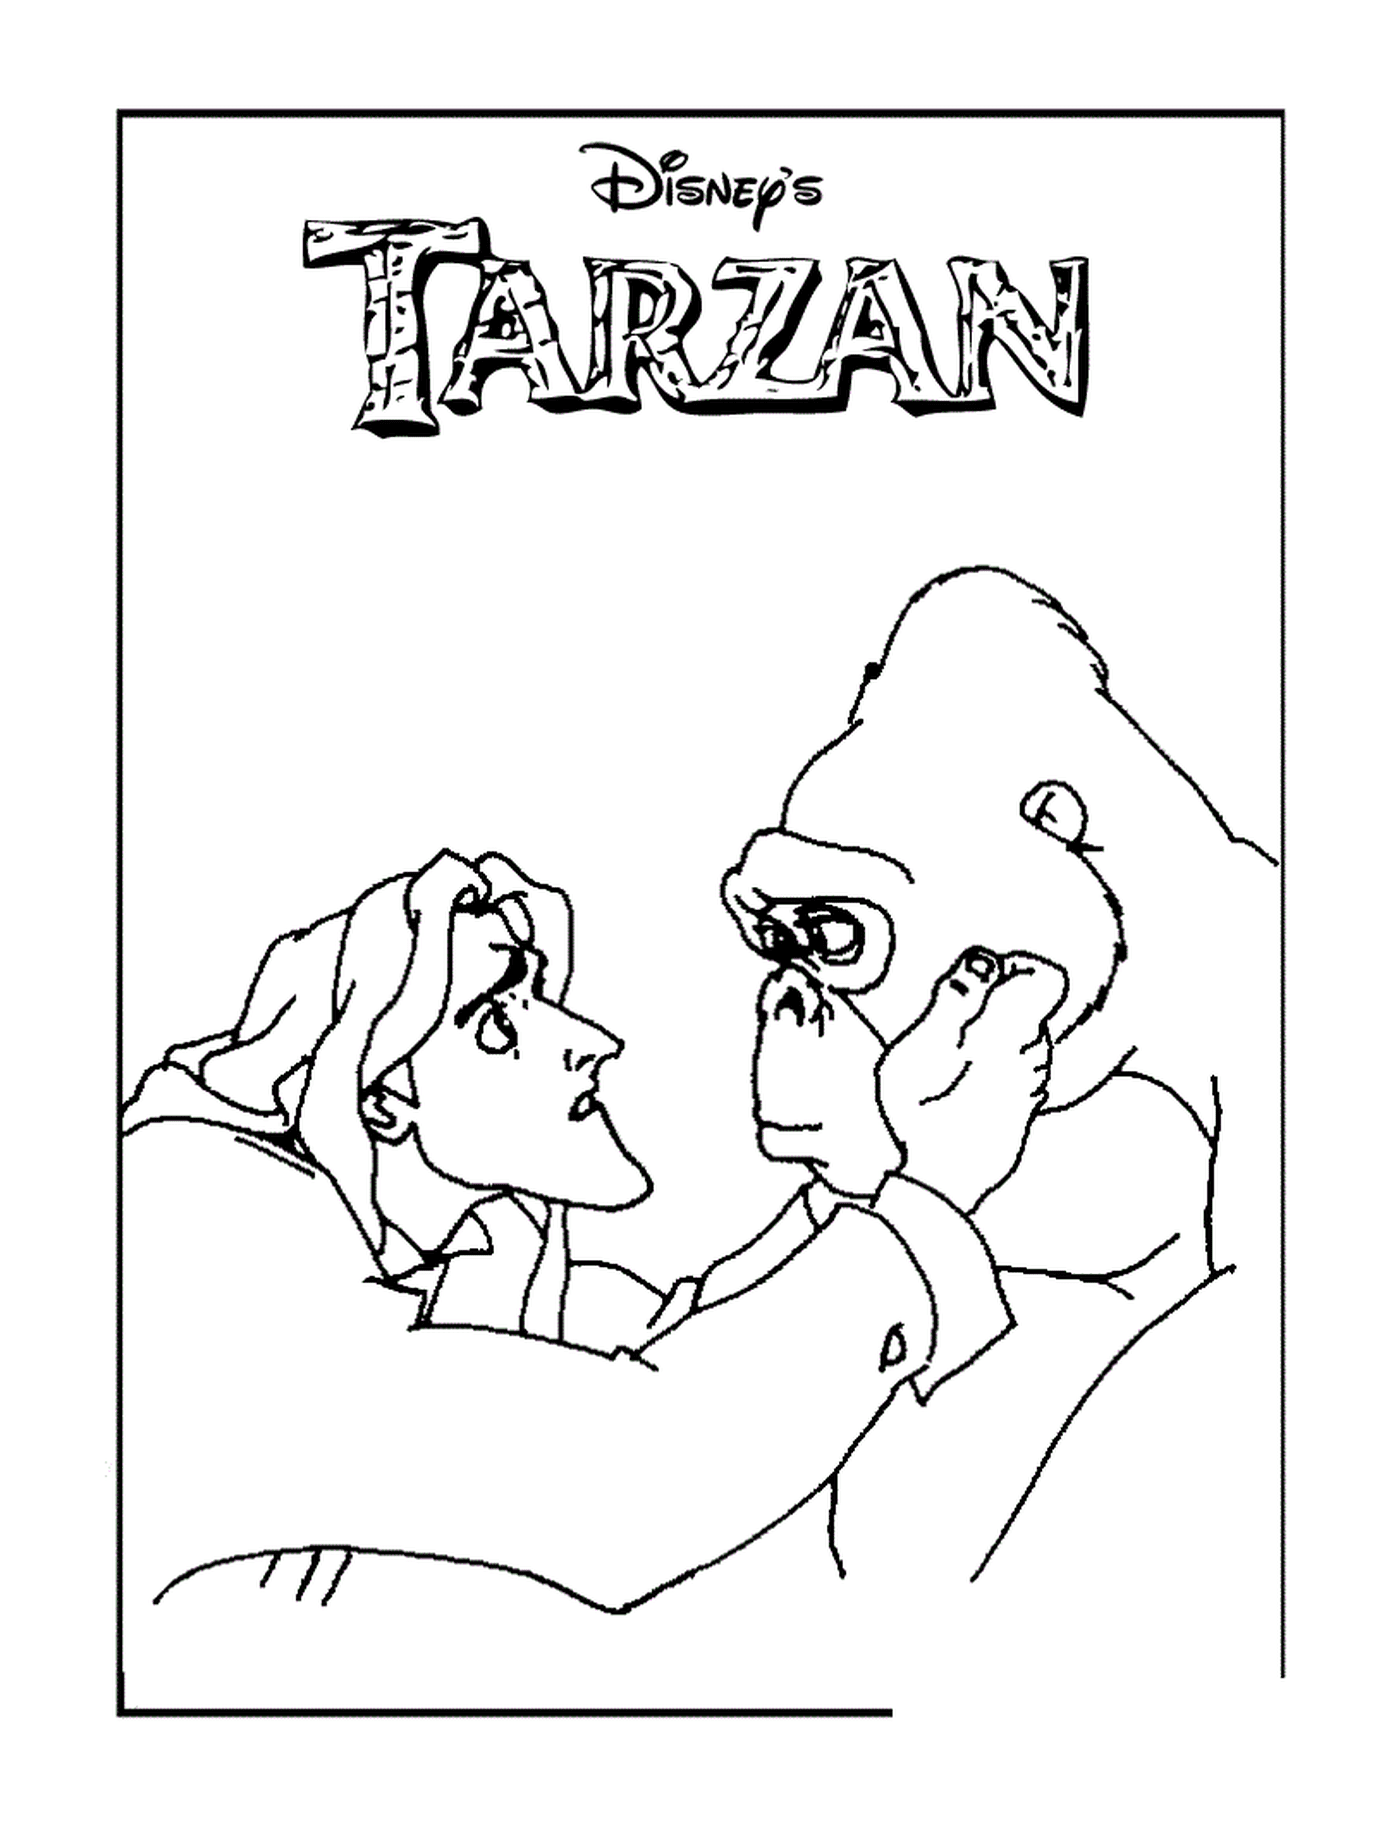   Tarzan et gorille 